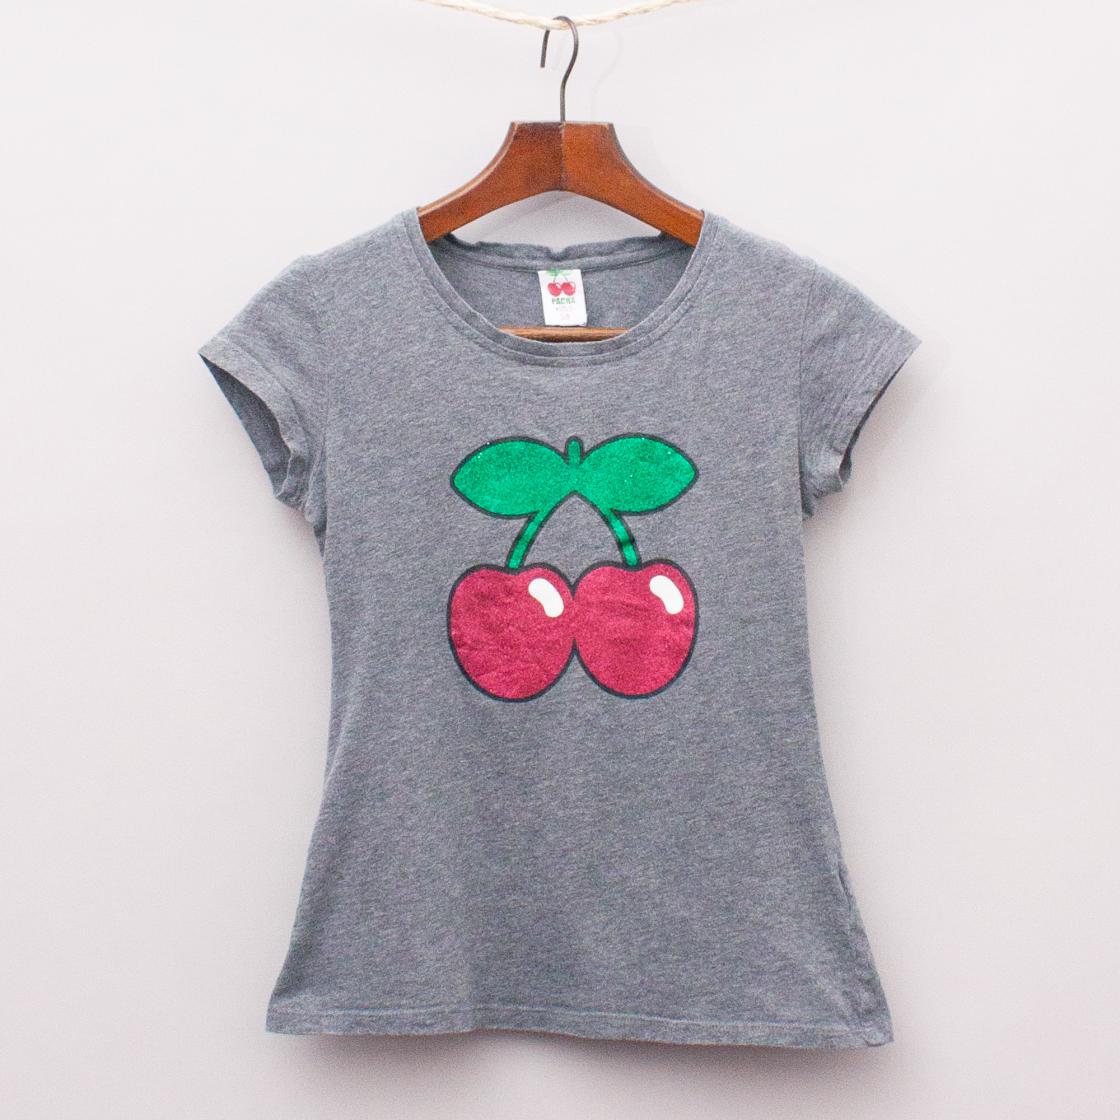 Pacha Kids Cherry T-Shirt